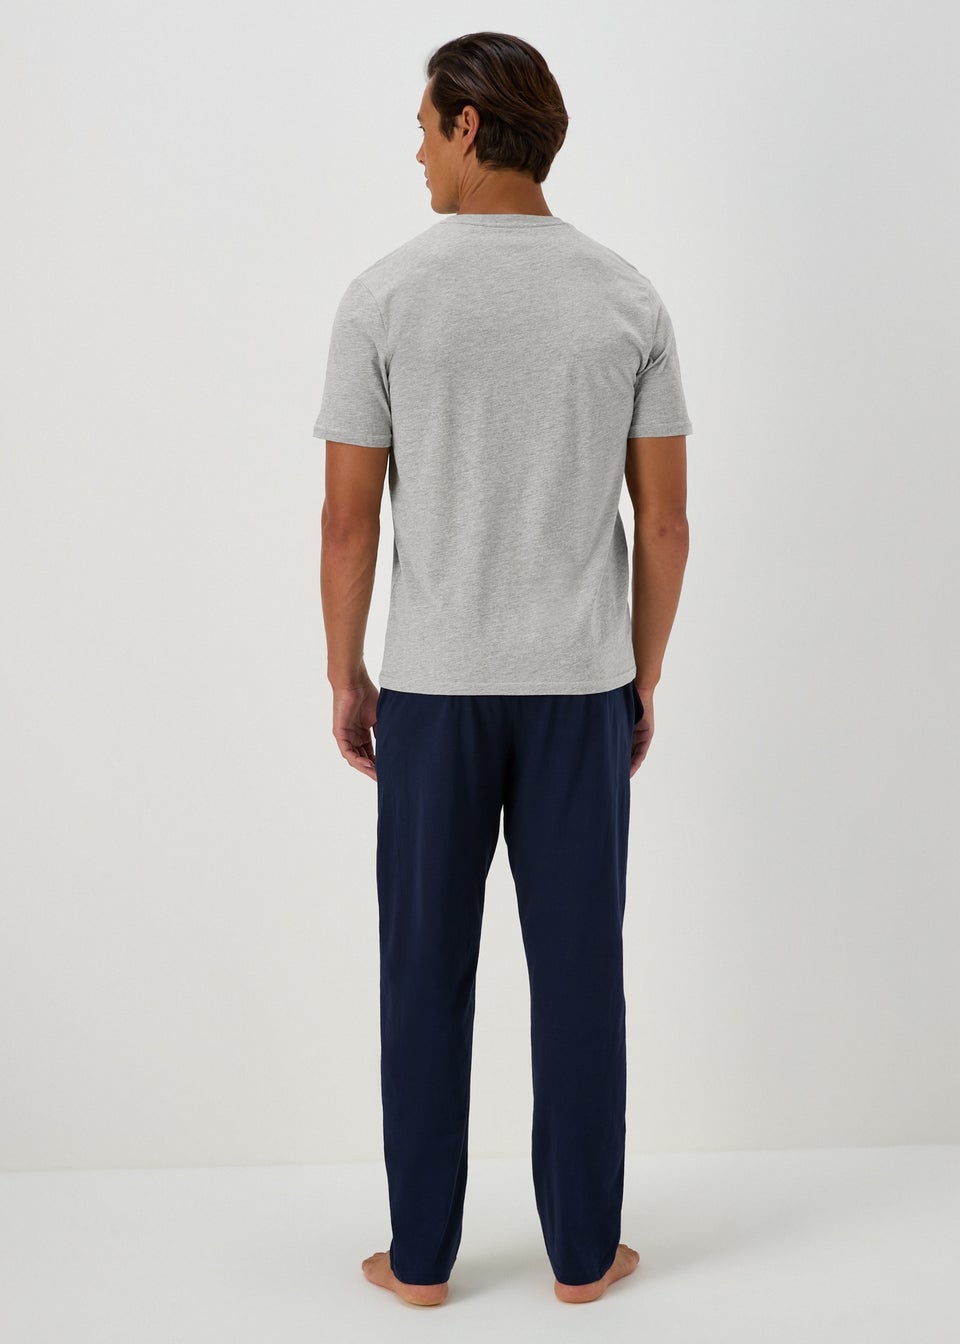 Grey T-Shirt Pyjama Set